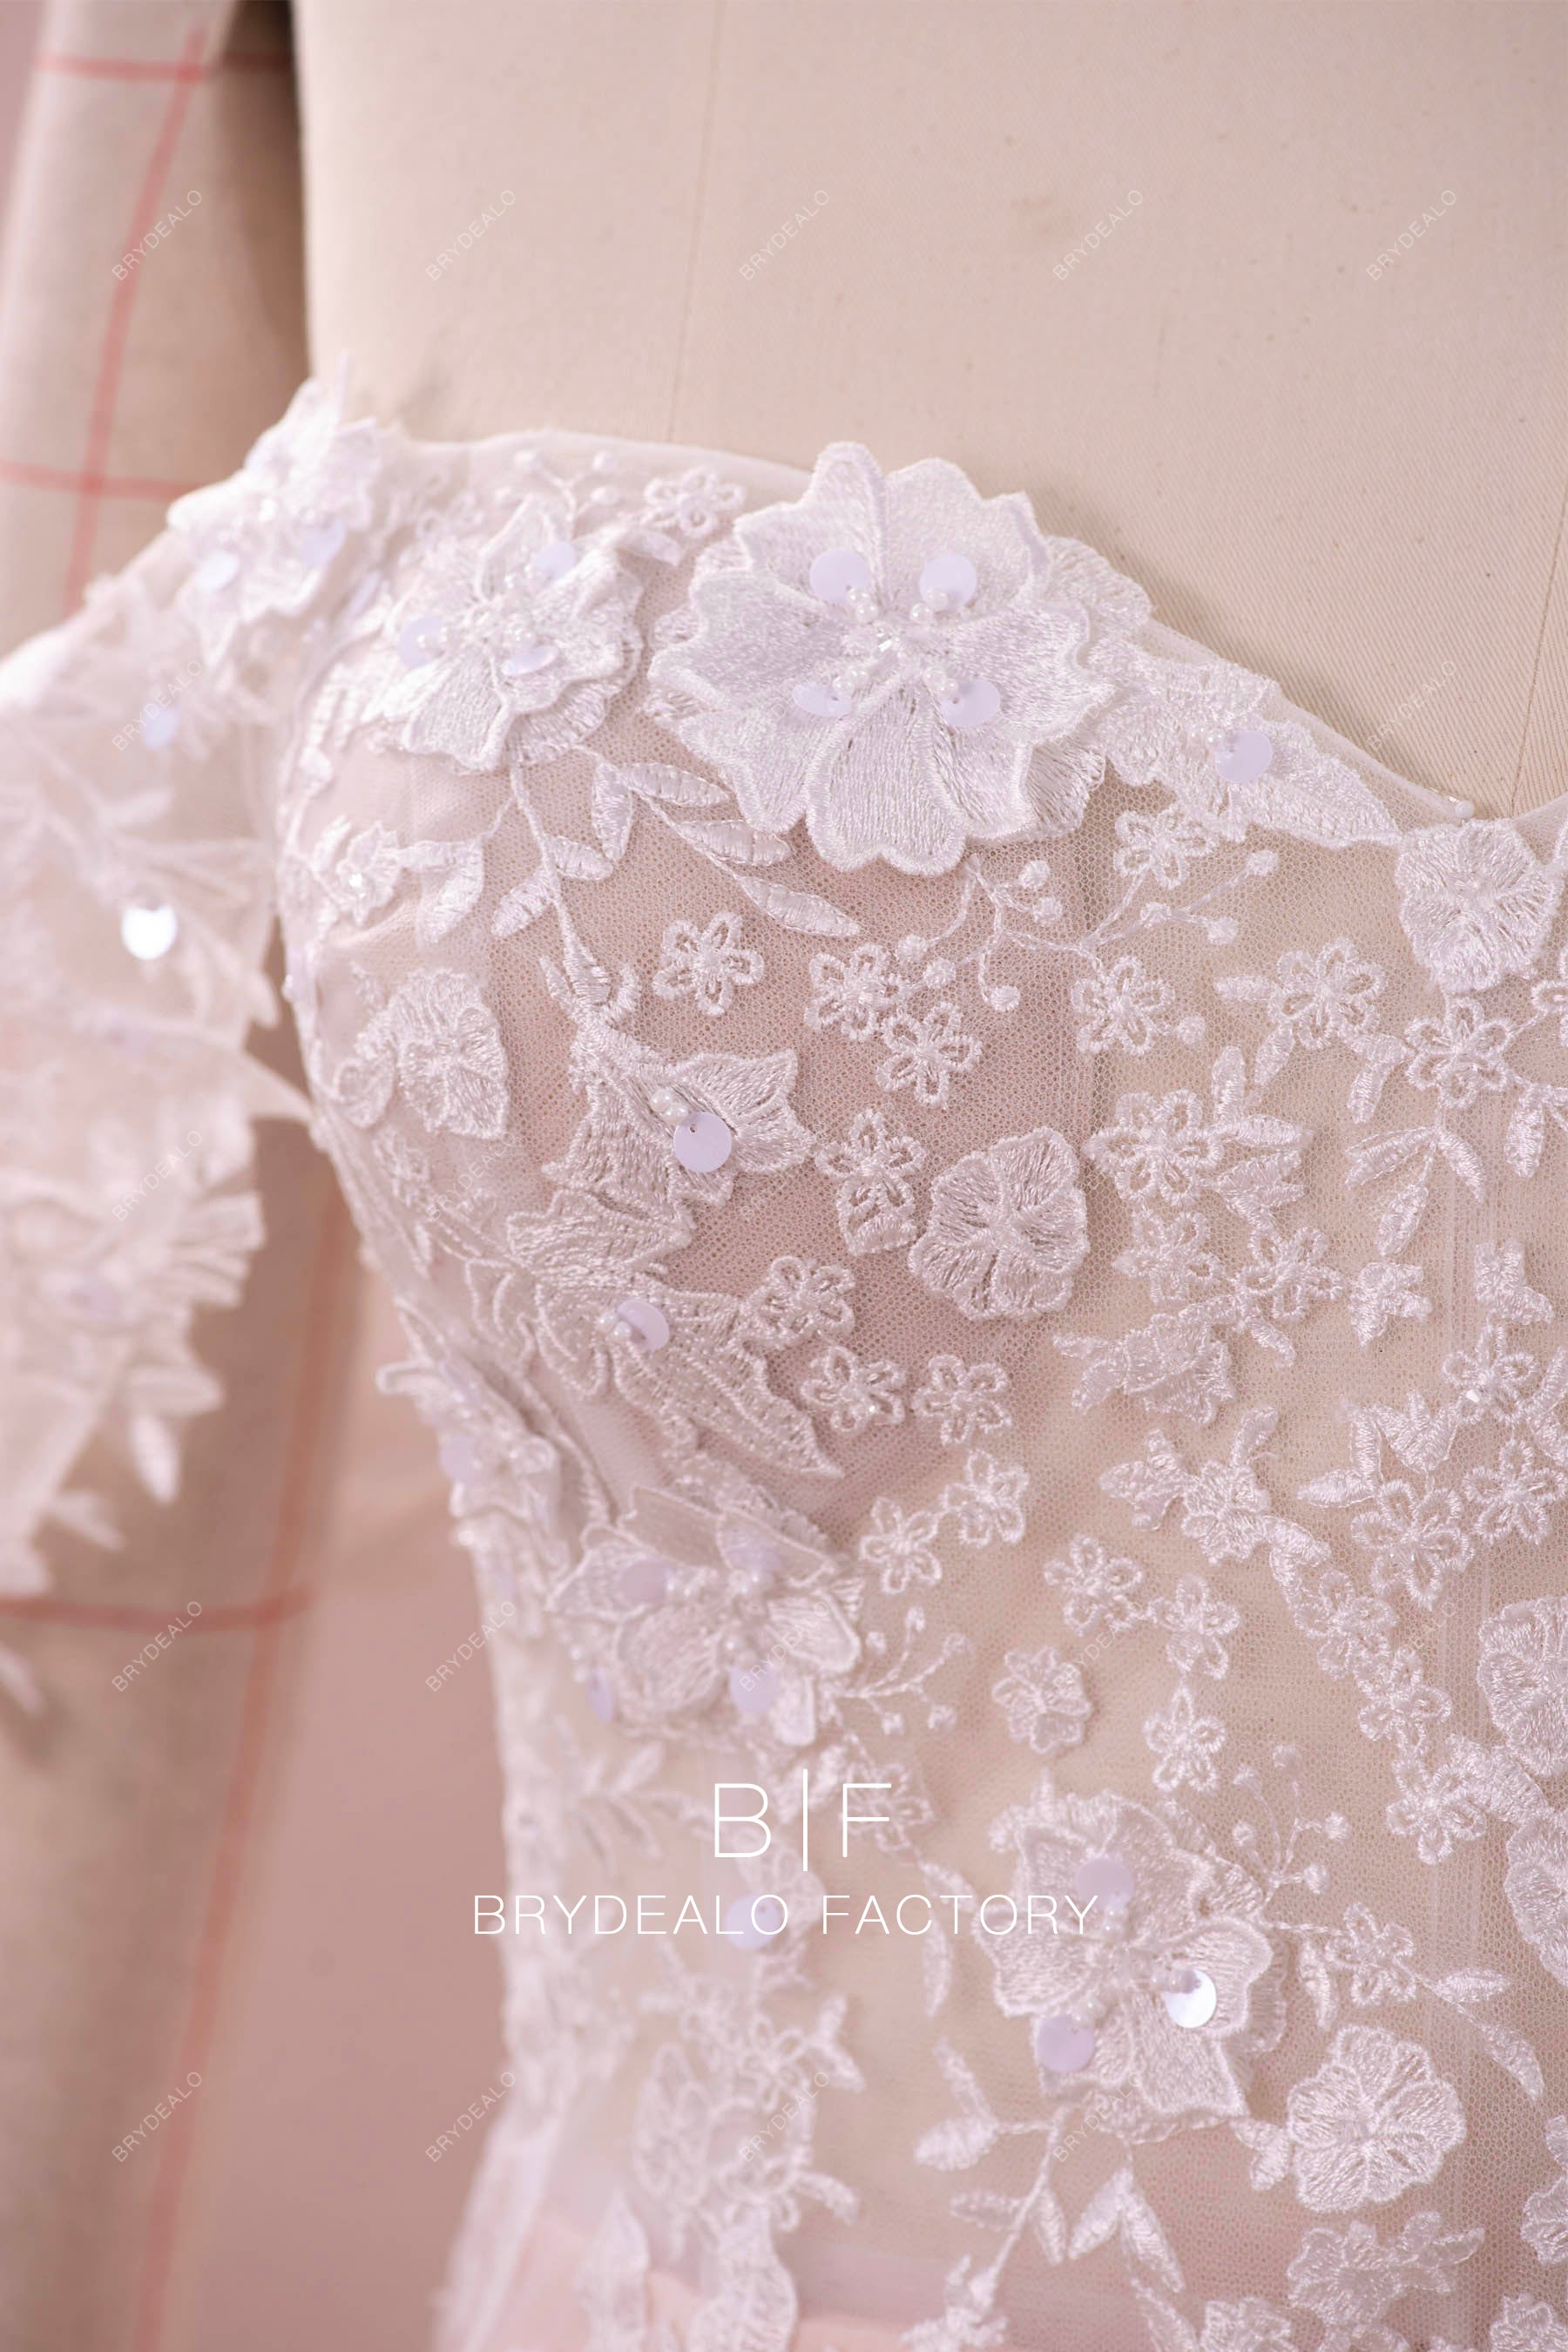 3D flower bridal lace